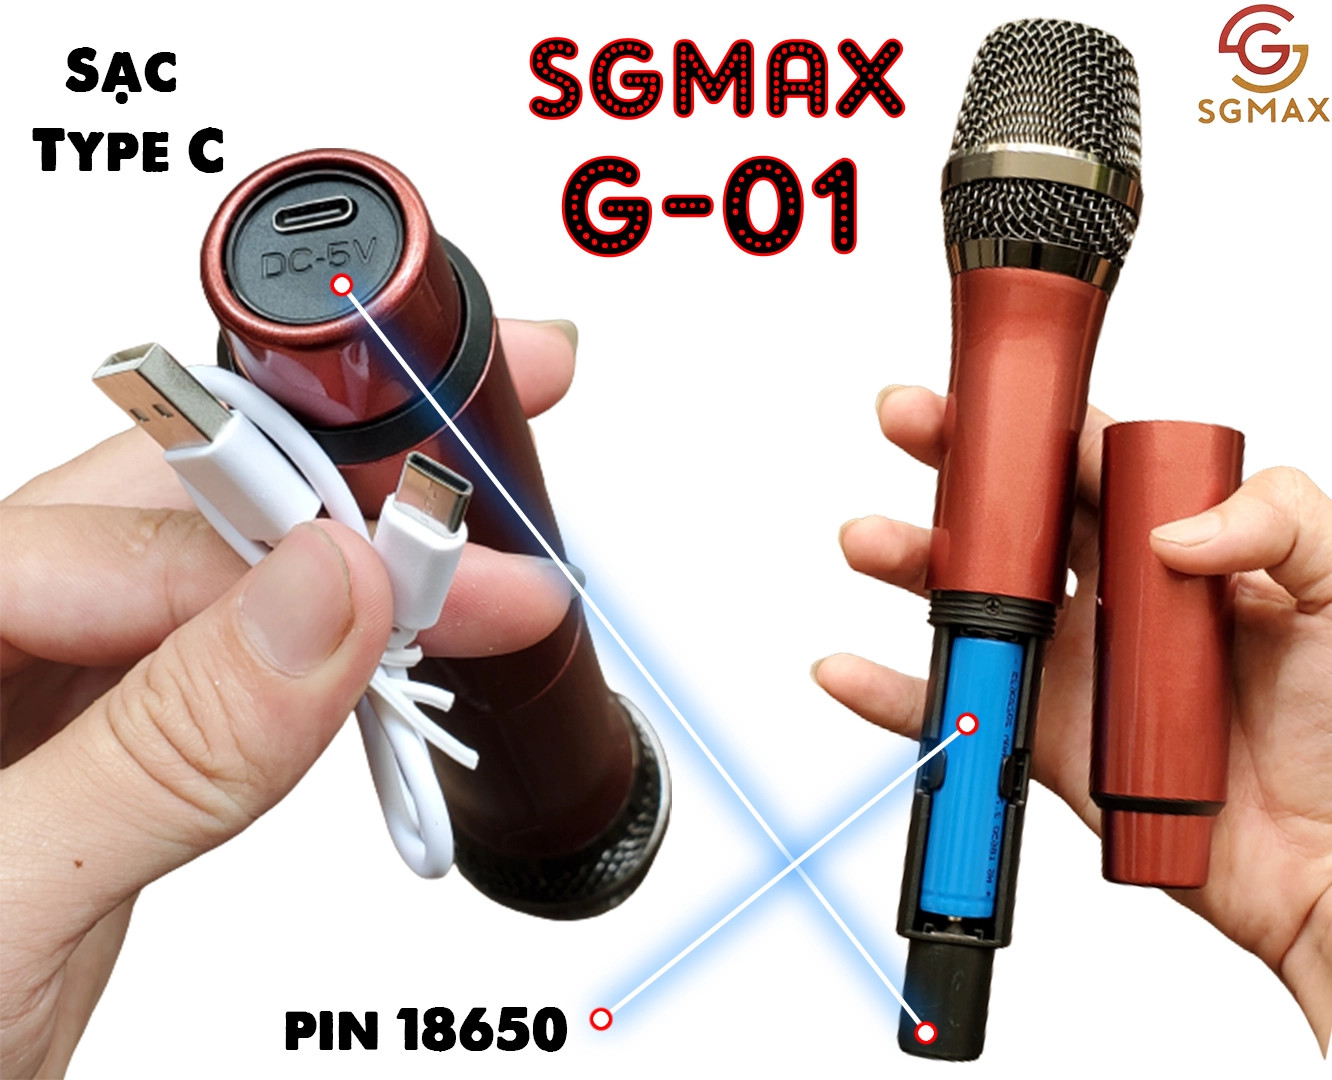 [XÃ KHO] Micro Không Dây SGMAX G01,Mẫu Mới,Chuyên Dùng Cho karaoke Hát Nhẹ. Thiết kế chắc chắn, tỉ mỉ, chức năng hiện đại